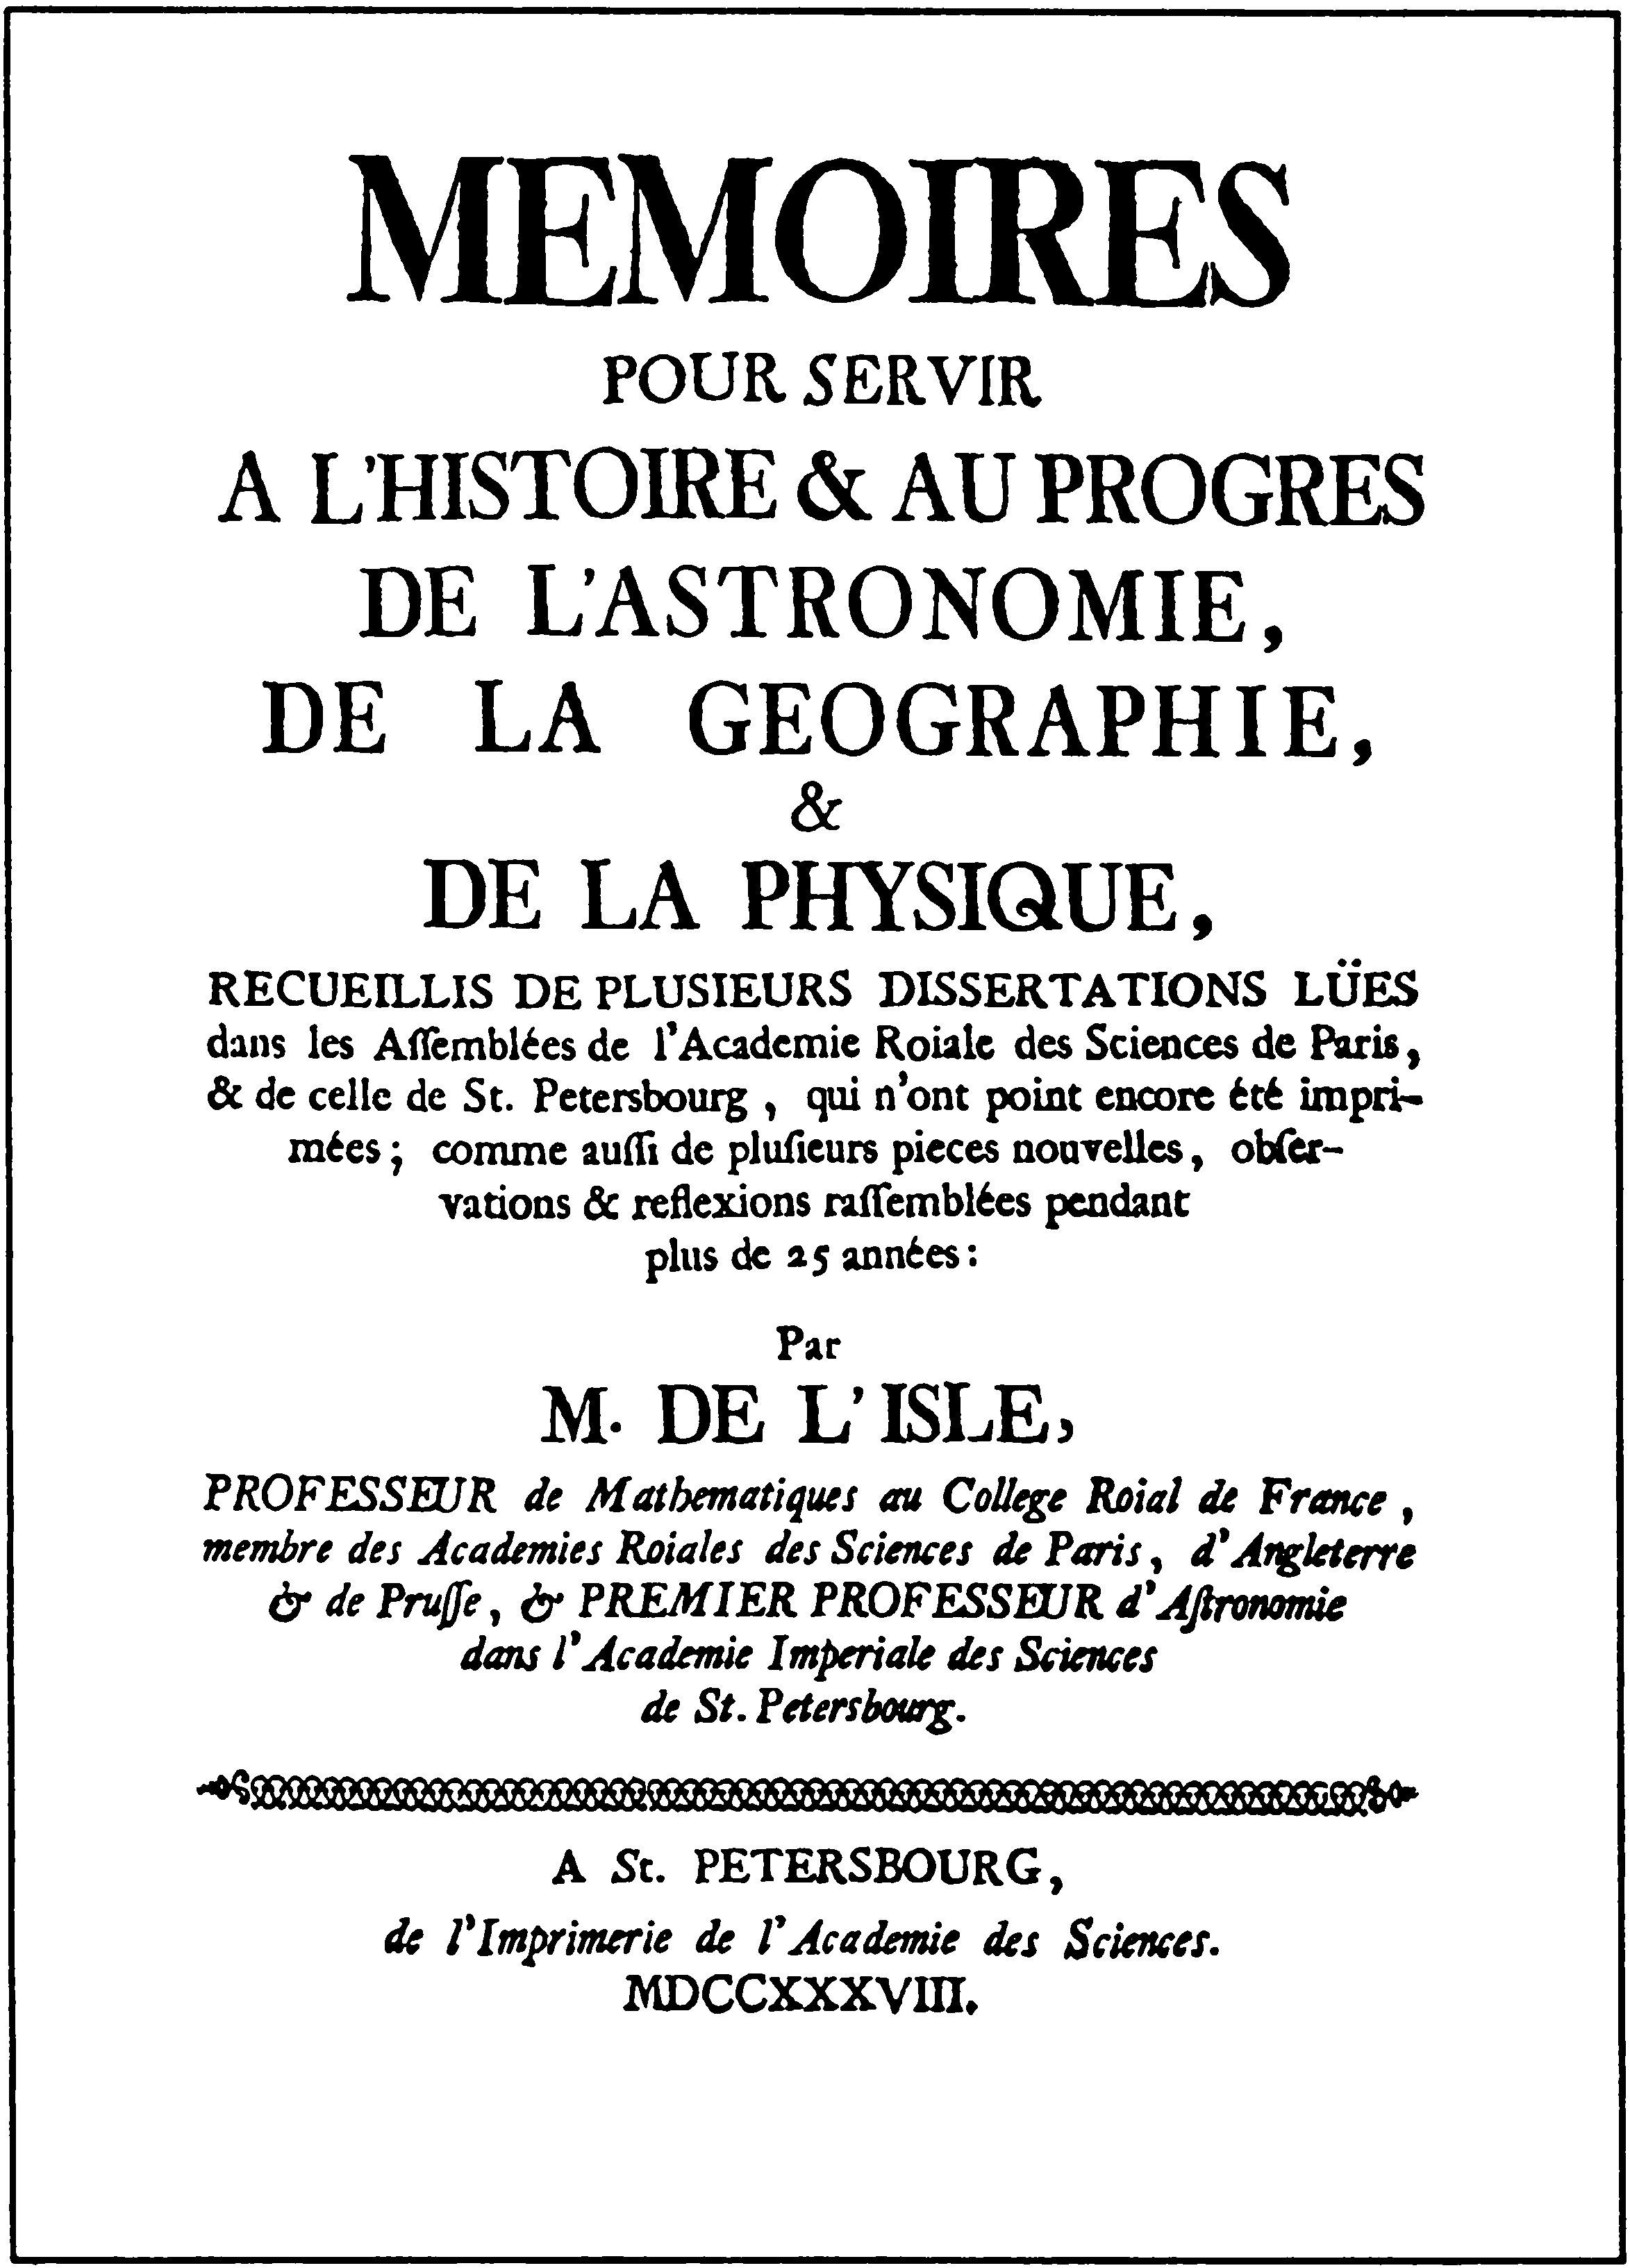 Титульный лист работы Ж.Н. Делили «Мемуары в пользу истории и развития астрономии, географии, и физики»